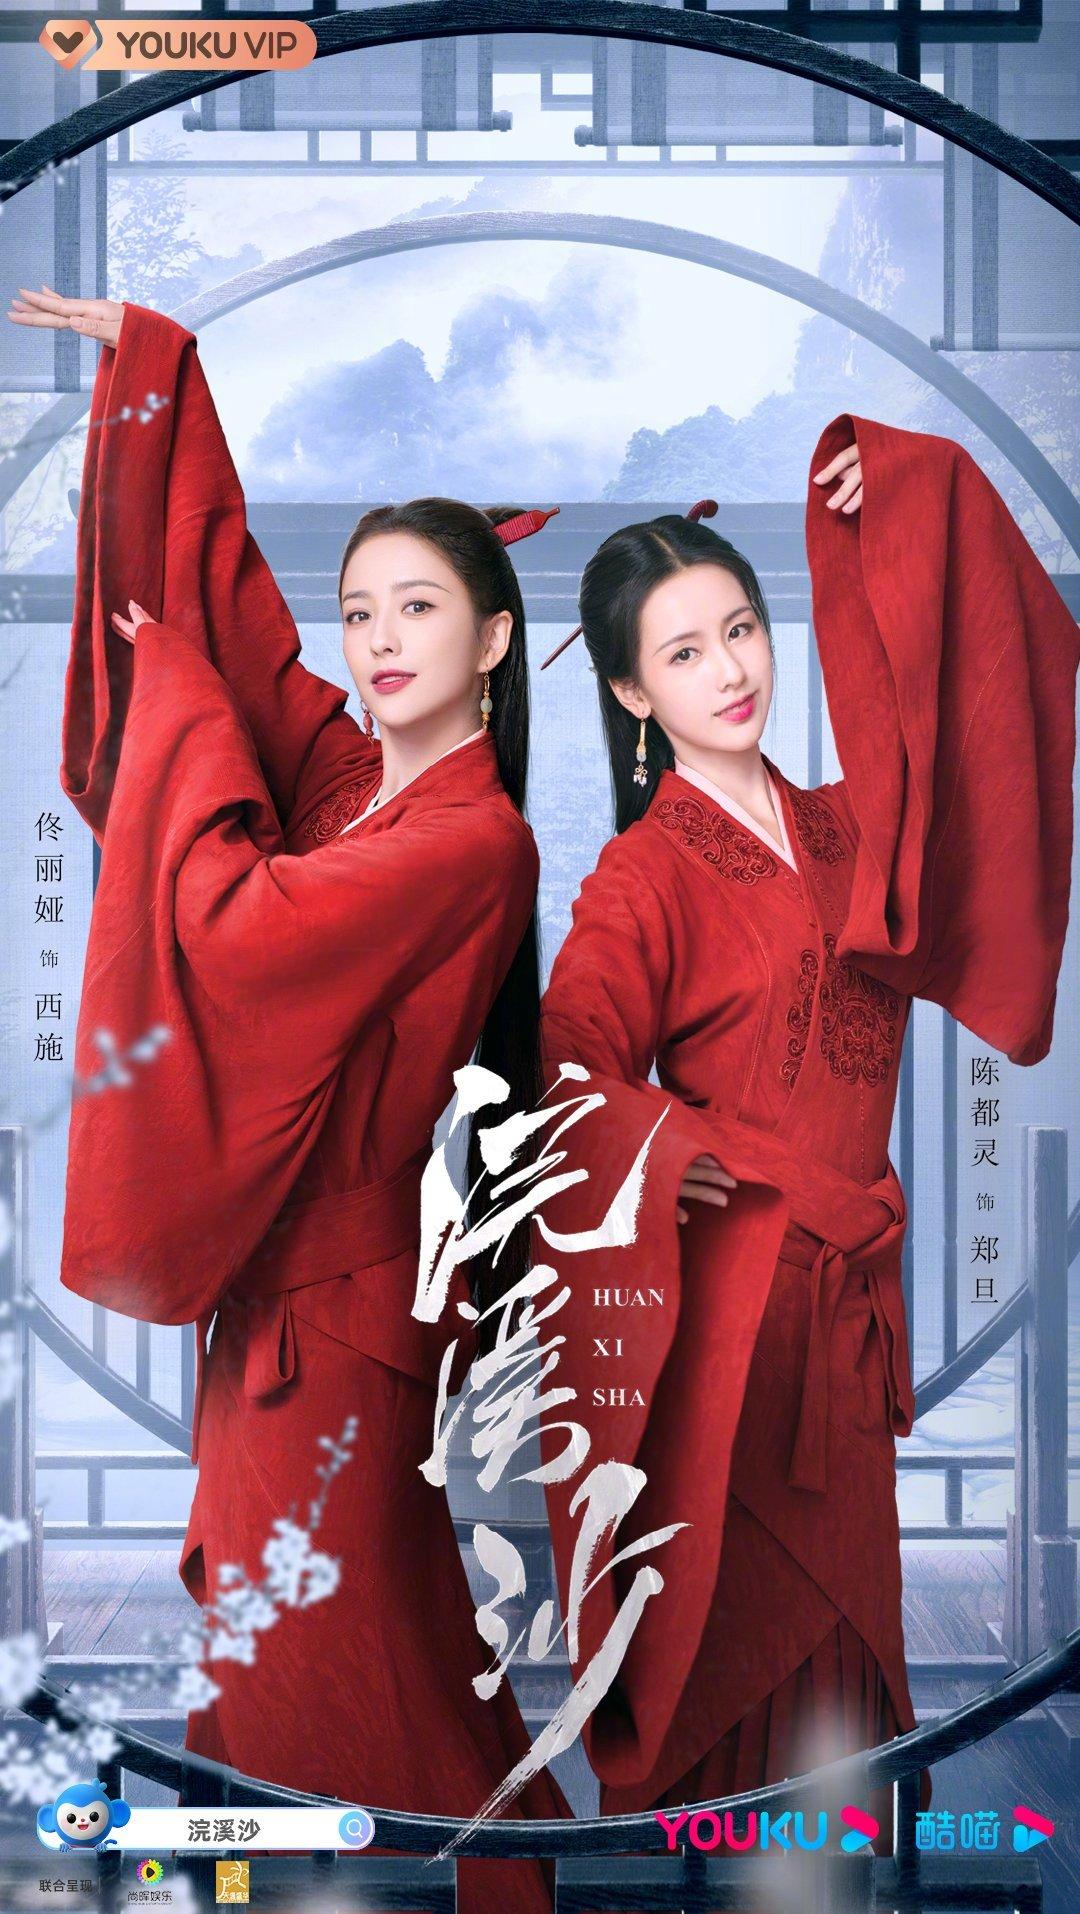 10 bộ phim Hoa Ngữ sắp lên sóng trên Youku nửa cuối năm 2021: Bạn đã sẵn sàng! Bác sĩ bộ phim Chúng Ta không Biết Yêu cuối năm Gió Nam Hiểu Lòng Tôi hạnh phúc hạnh phúc đến vạn gia Hoa ngữ Hoán Khê Sa Lạc Chốn Phù Hoa Ngự Giao Ký Nữ Bác Sỹ Tâm Lý phim Hoa Ngữ phim hoa ngữ sắp lên sóng Phim Trung Quốc hay nhất 2021 Quãng Đời Còn Lại tâm lý Xin Chào Ngọn Lửa Xanh Xin Gọi Tôi Là Tổng Giám